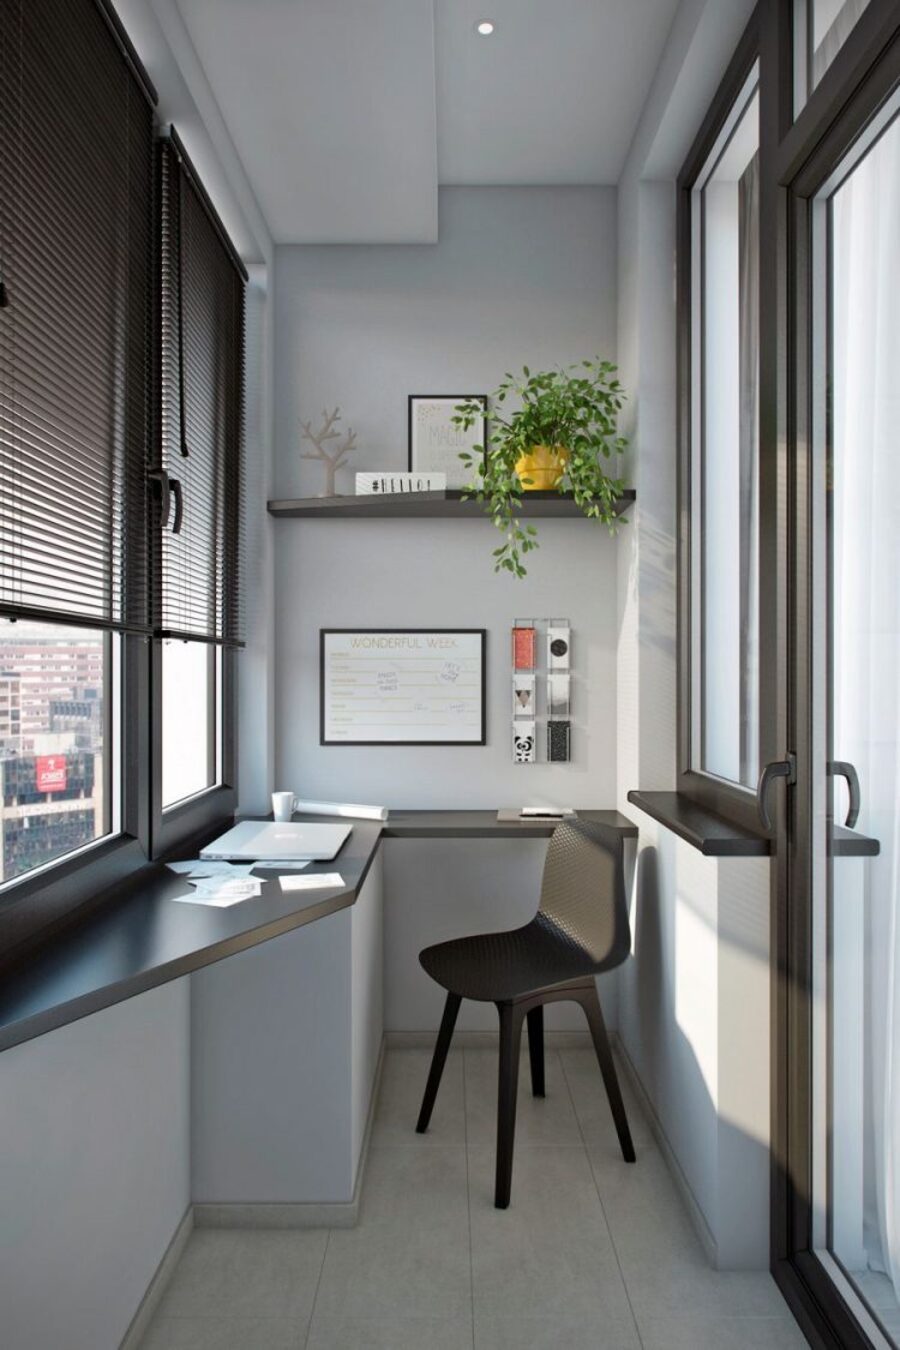 Las persianas de la imagen permiten regular la luz que entra al home office.